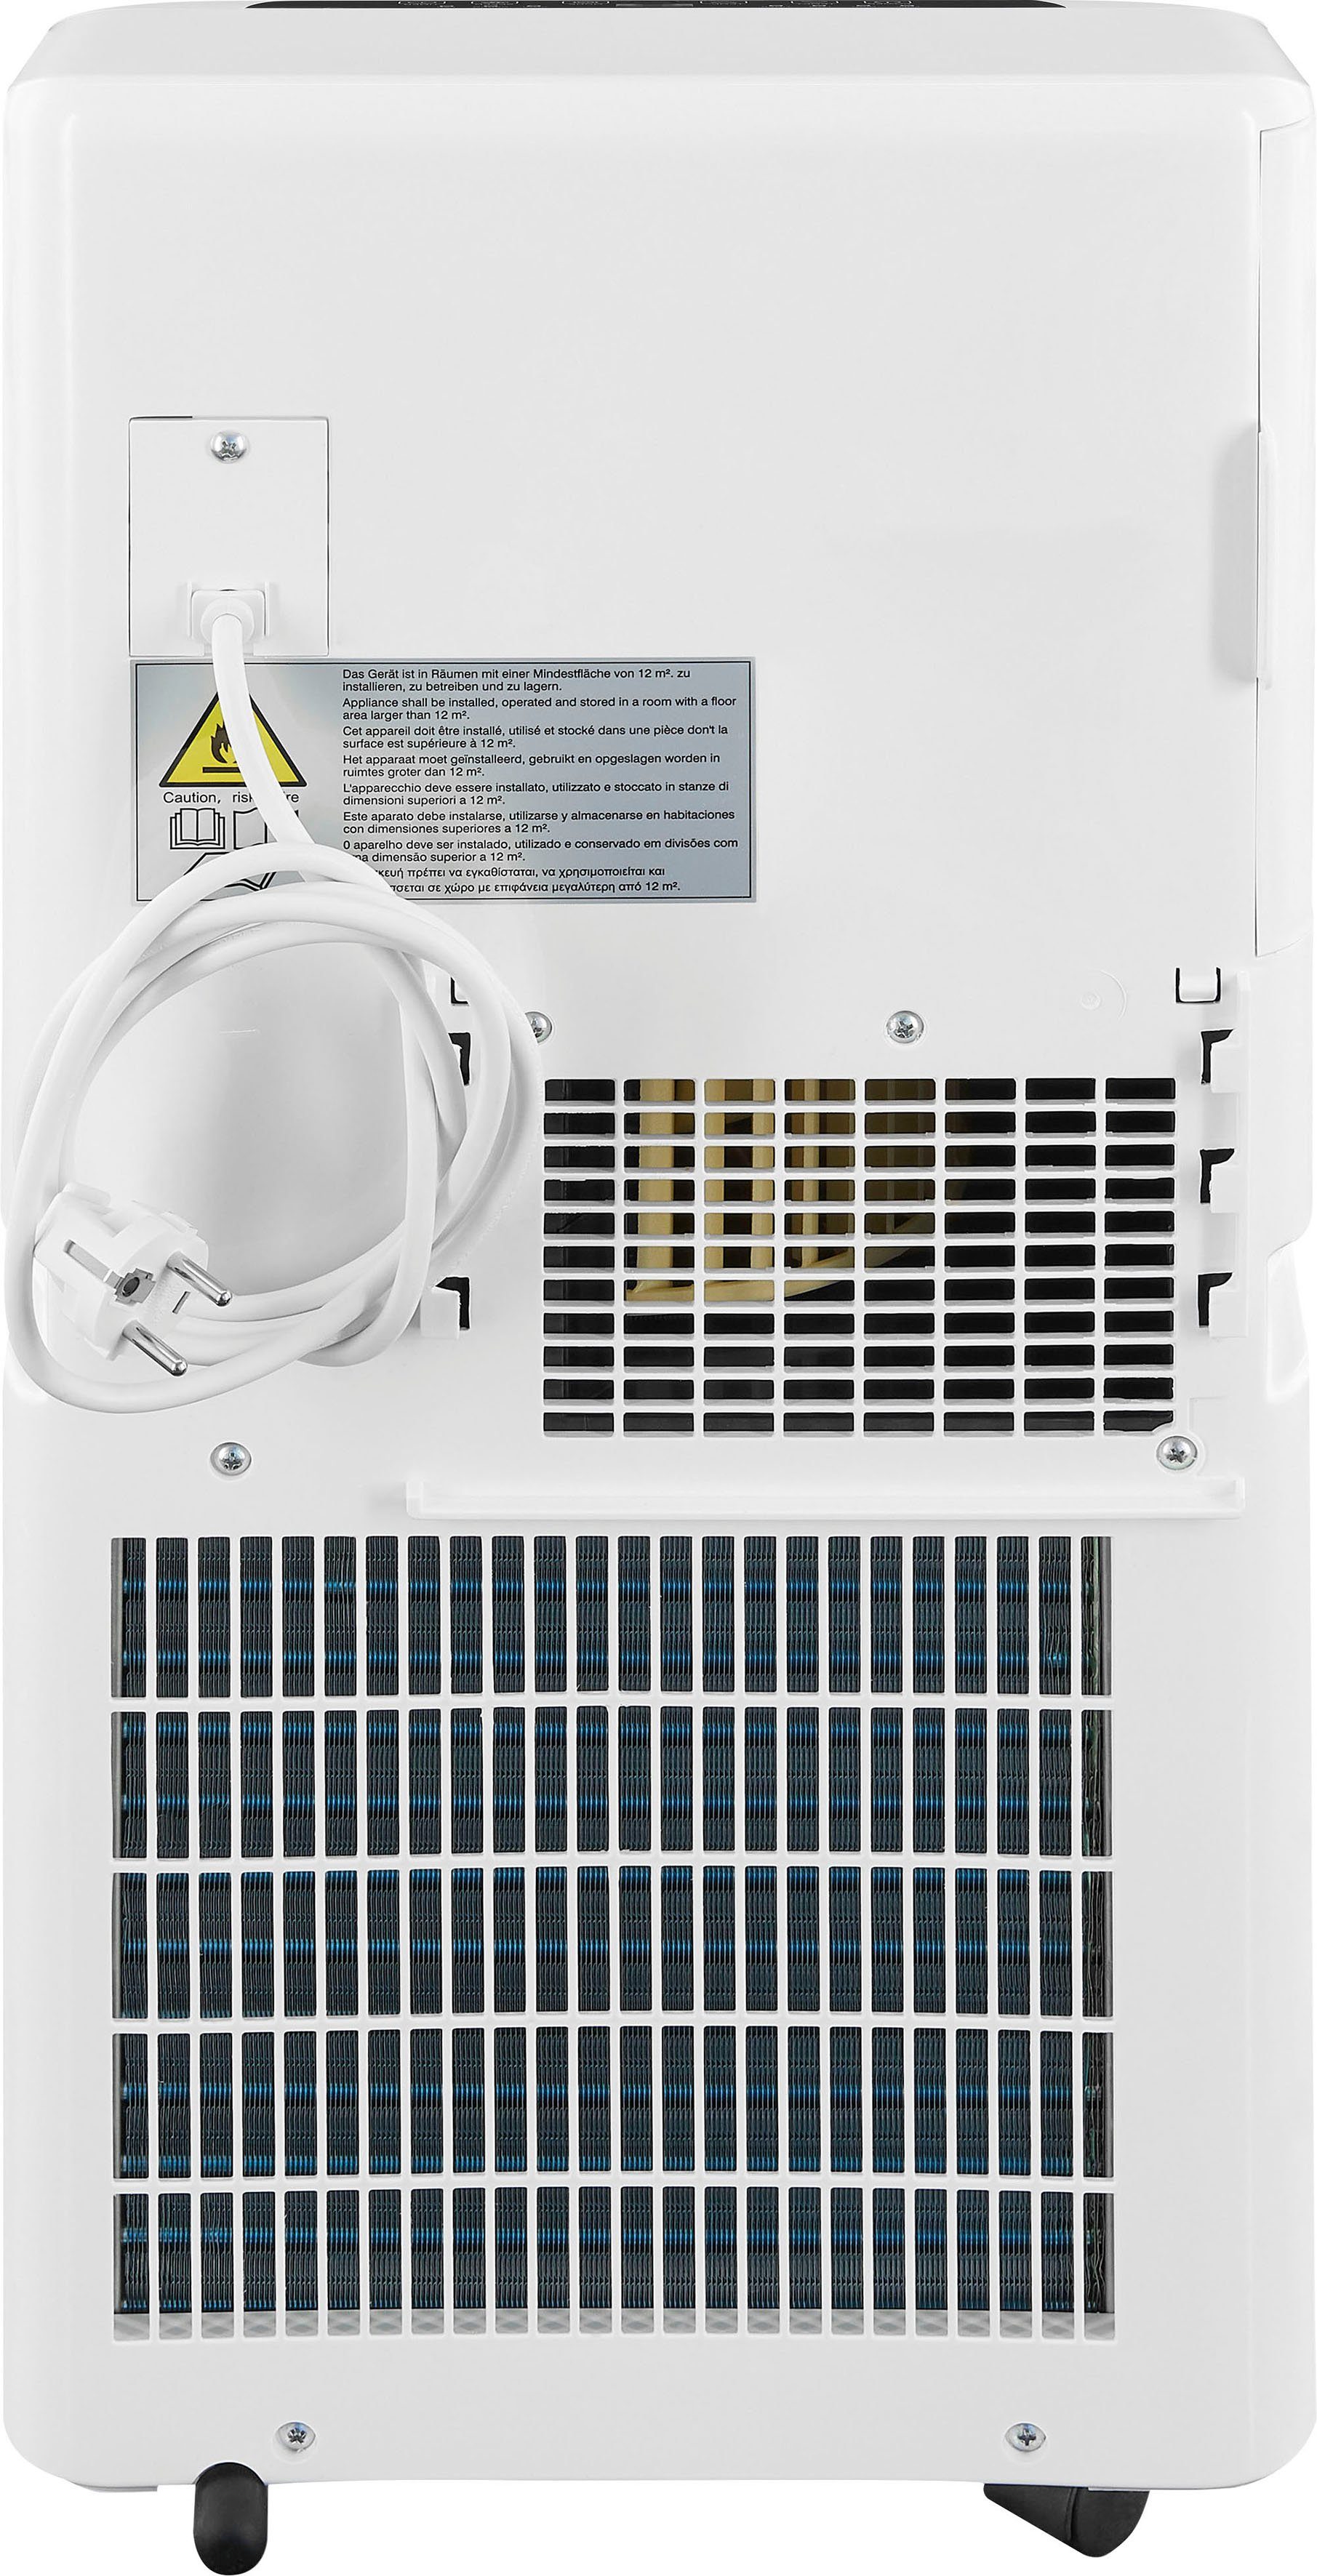 exquisit 3-in-1-Klimagerät - für m² CM - geeignet Räume 30752 20 Ventilation, we, Entfeuchtung Luftkühlung